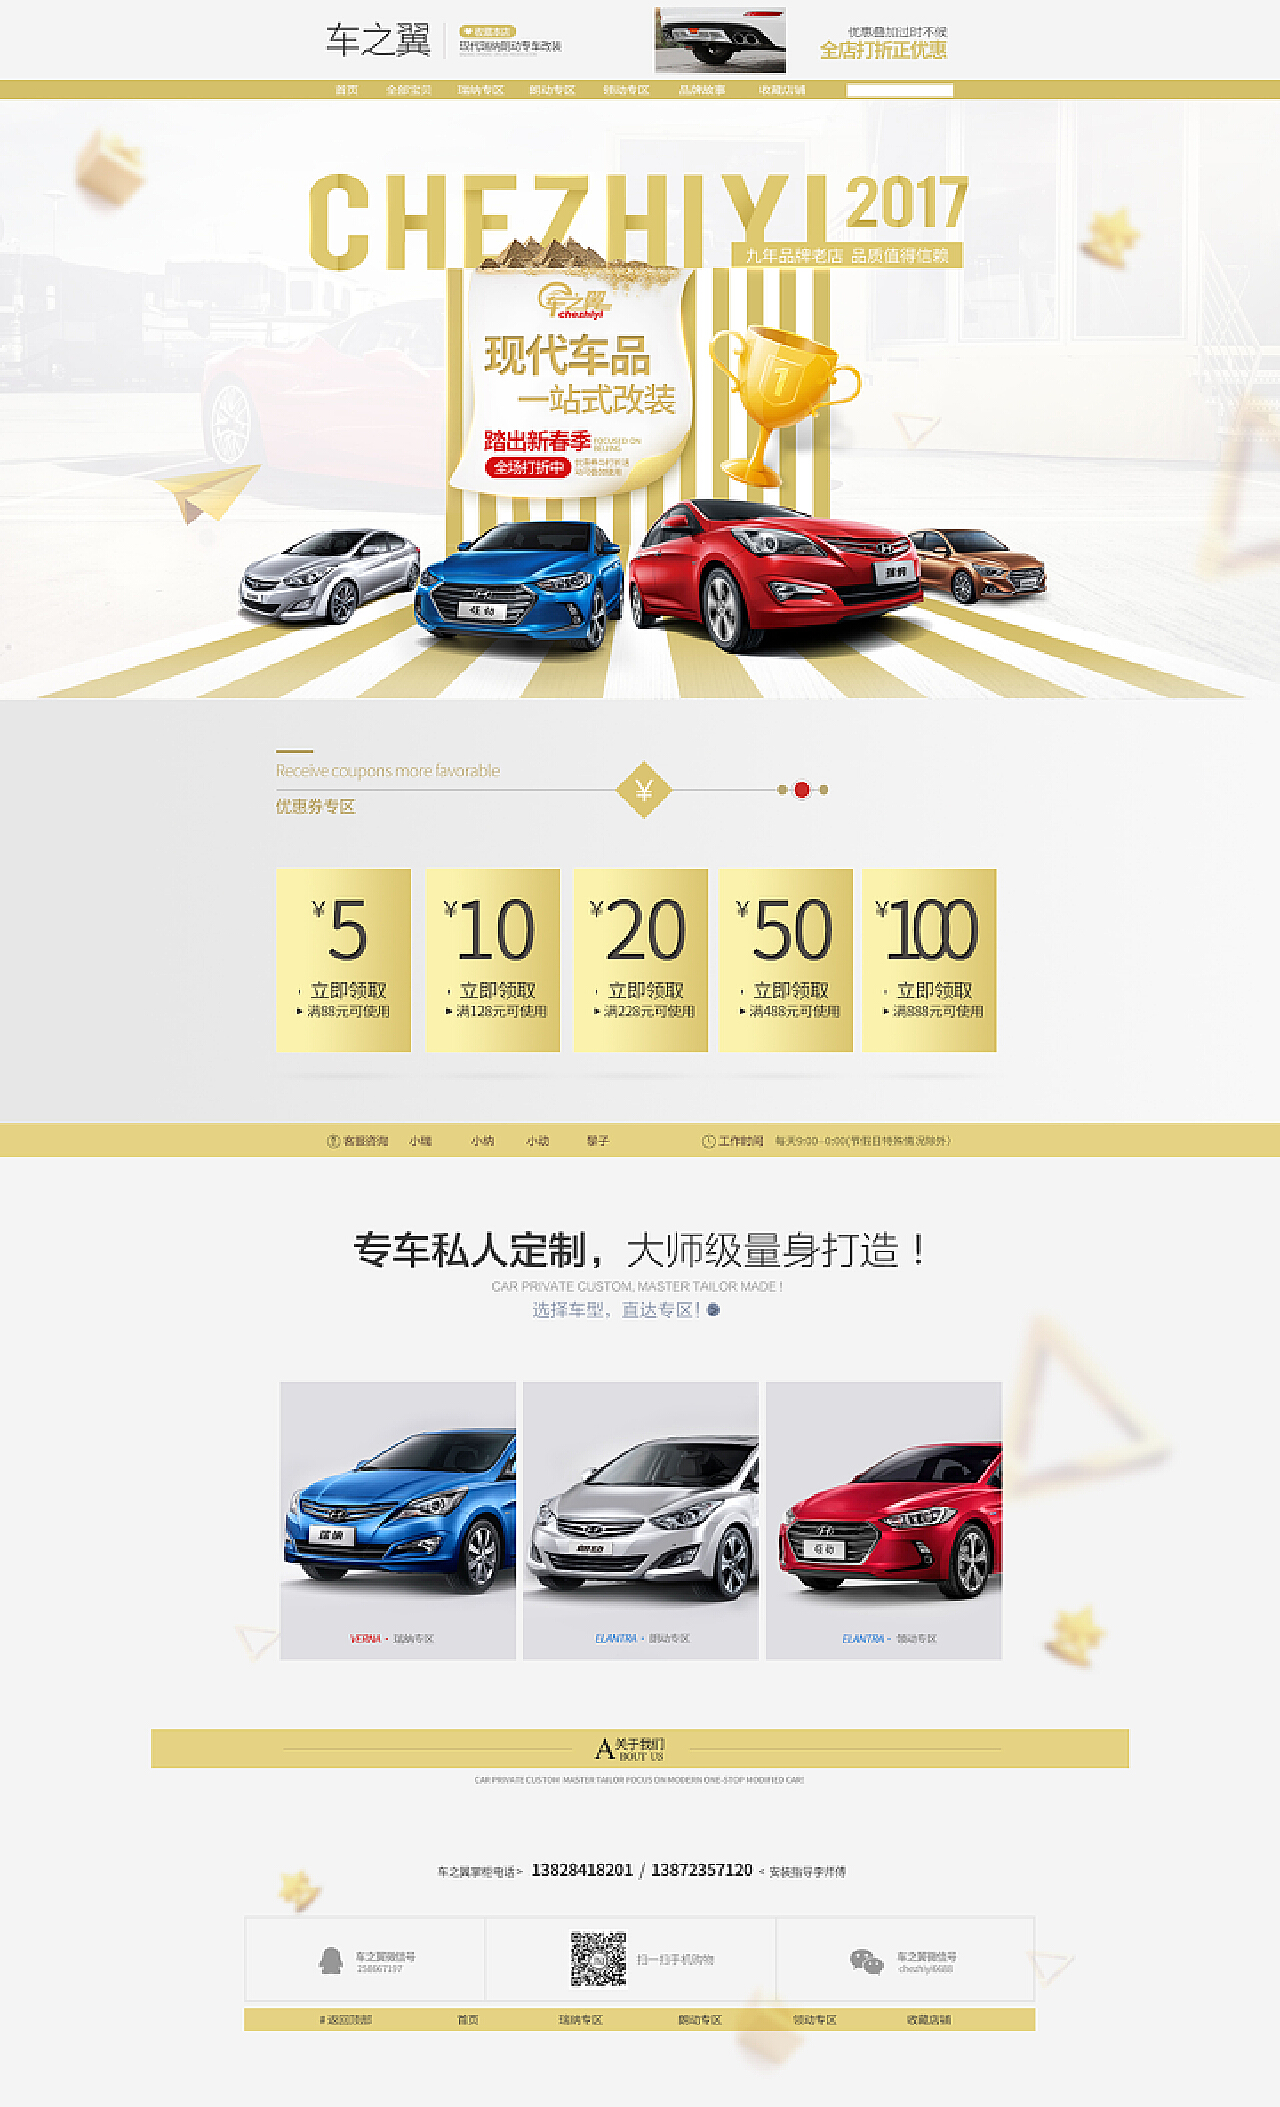 海源汽车服务有限公司（车之翼）|深圳|格莱美-汽车美容加盟一站式服务品牌